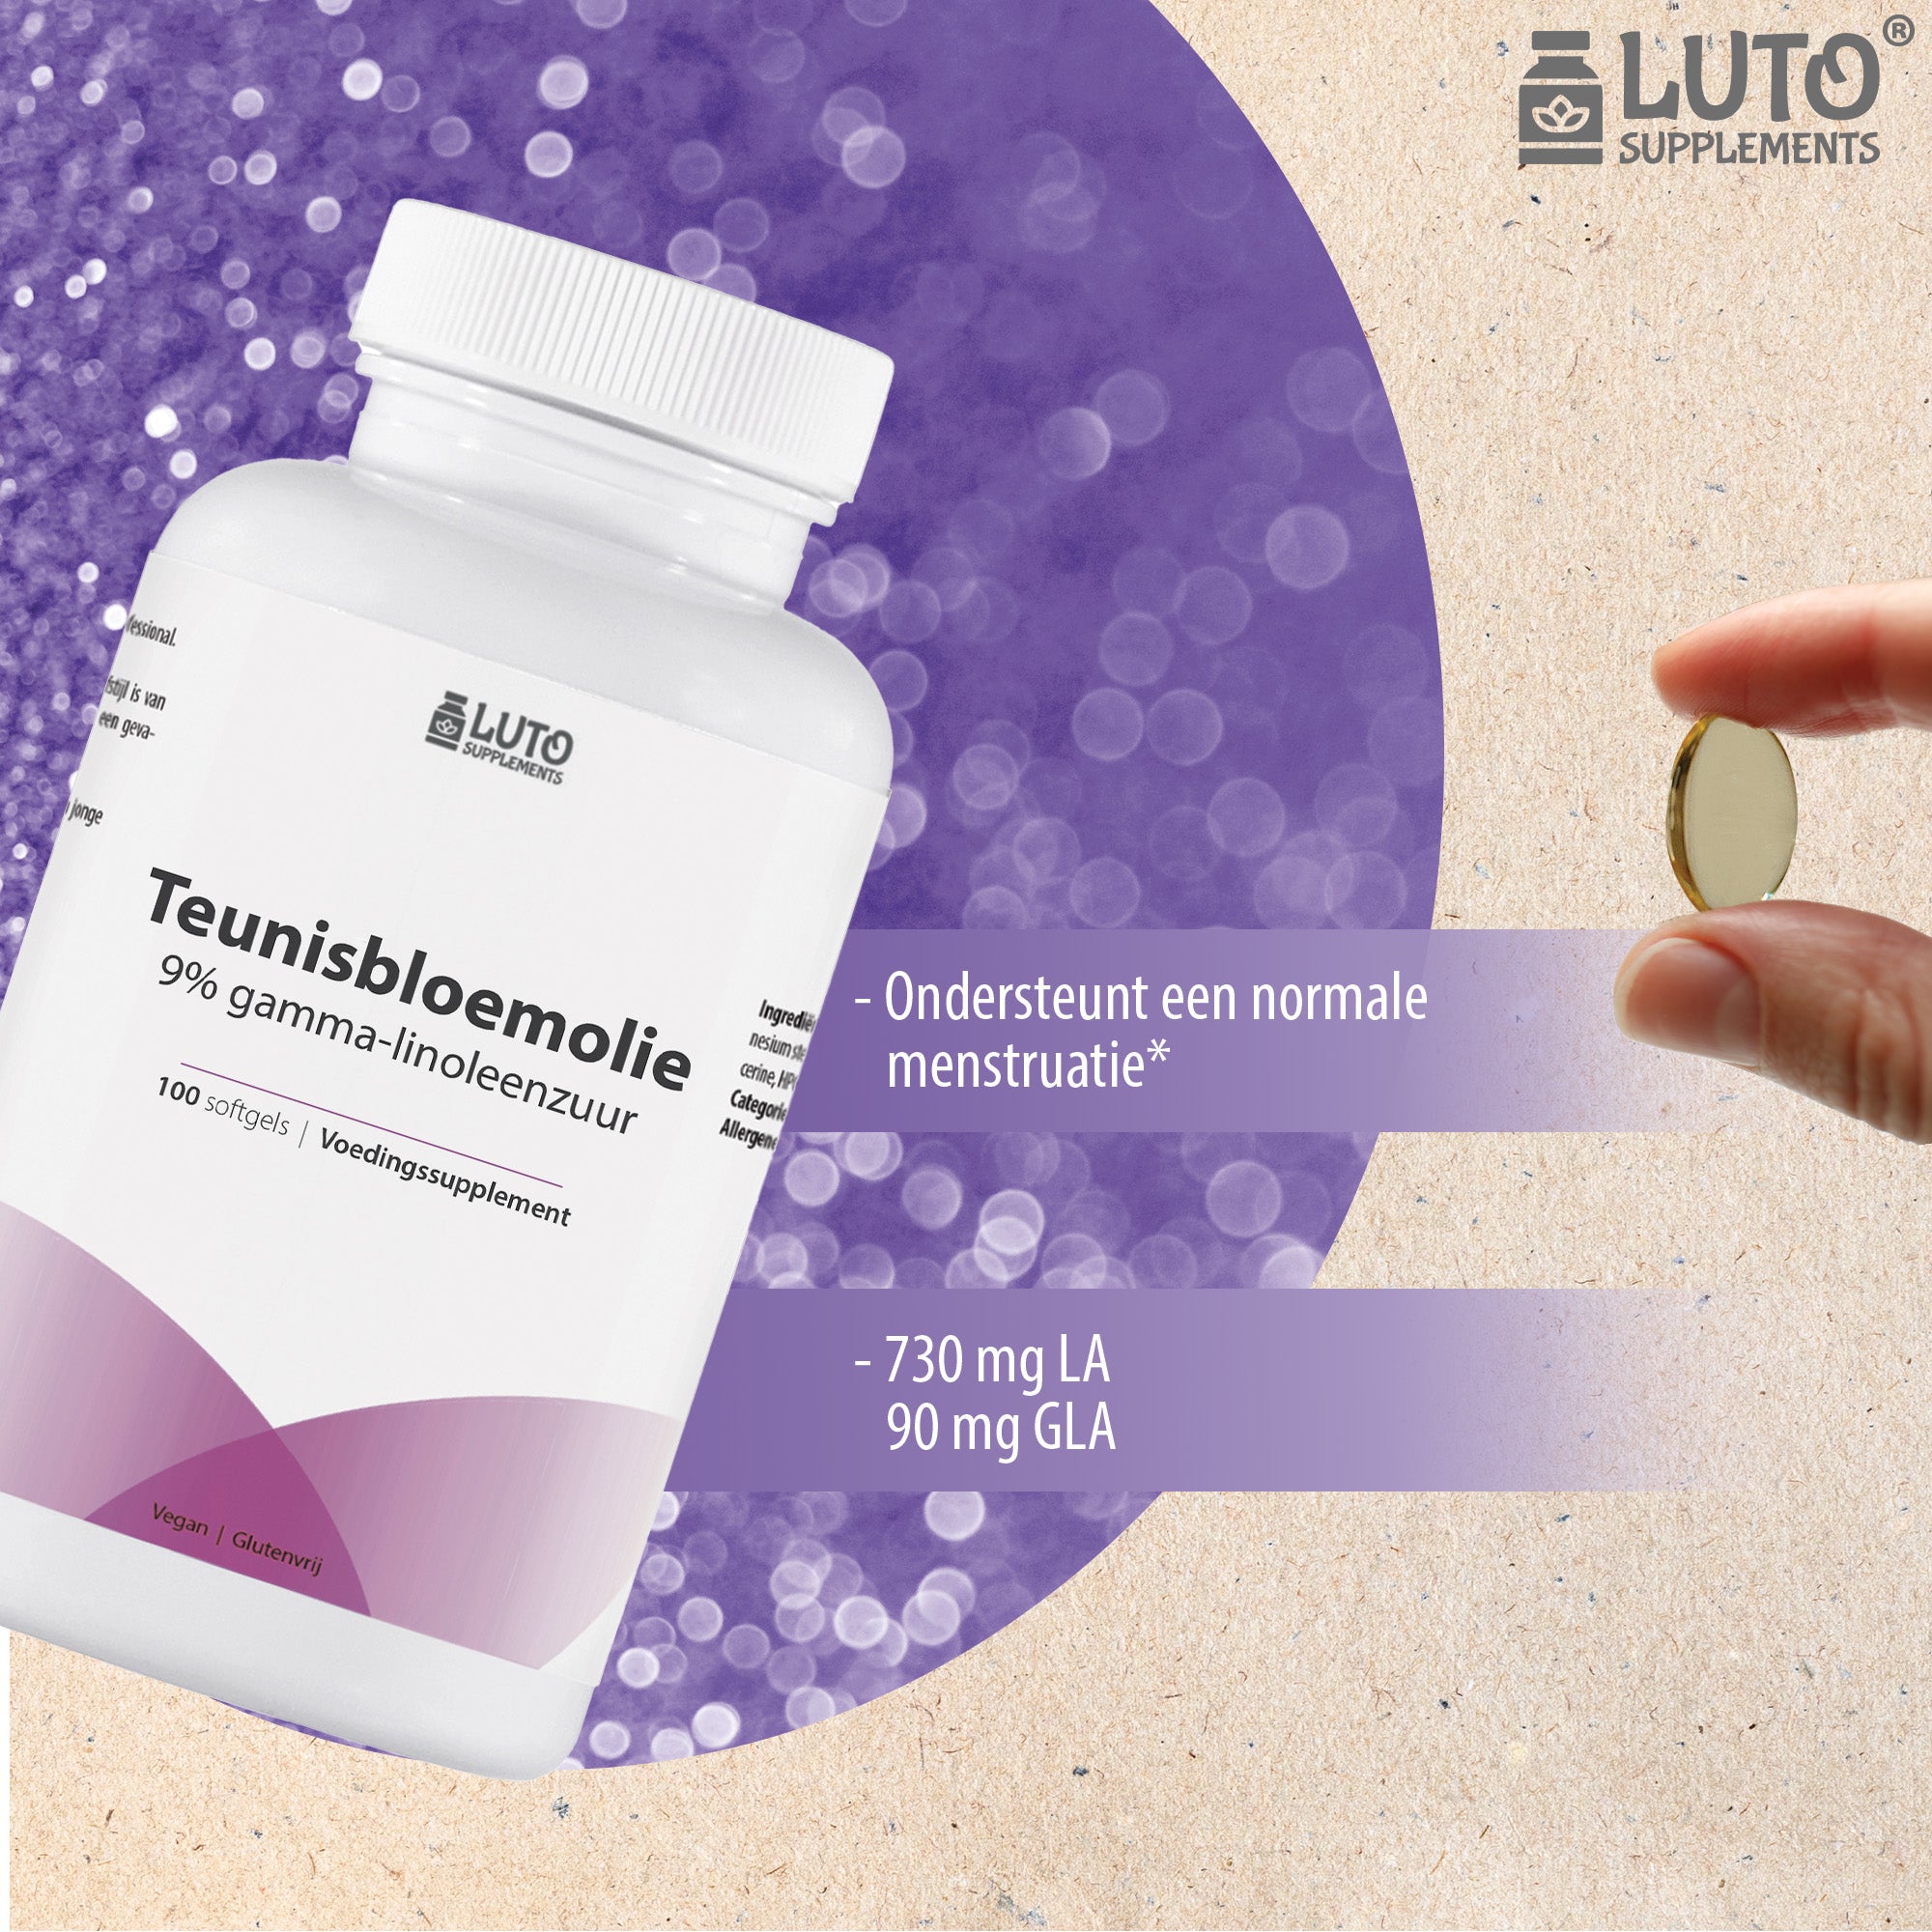 Teunisbloemolie | 1000mg | Premium: 9% gamma-linoleenzuur GLA | 100 softgels | Ondersteunt een normale menstruatie* | Luto Supplements